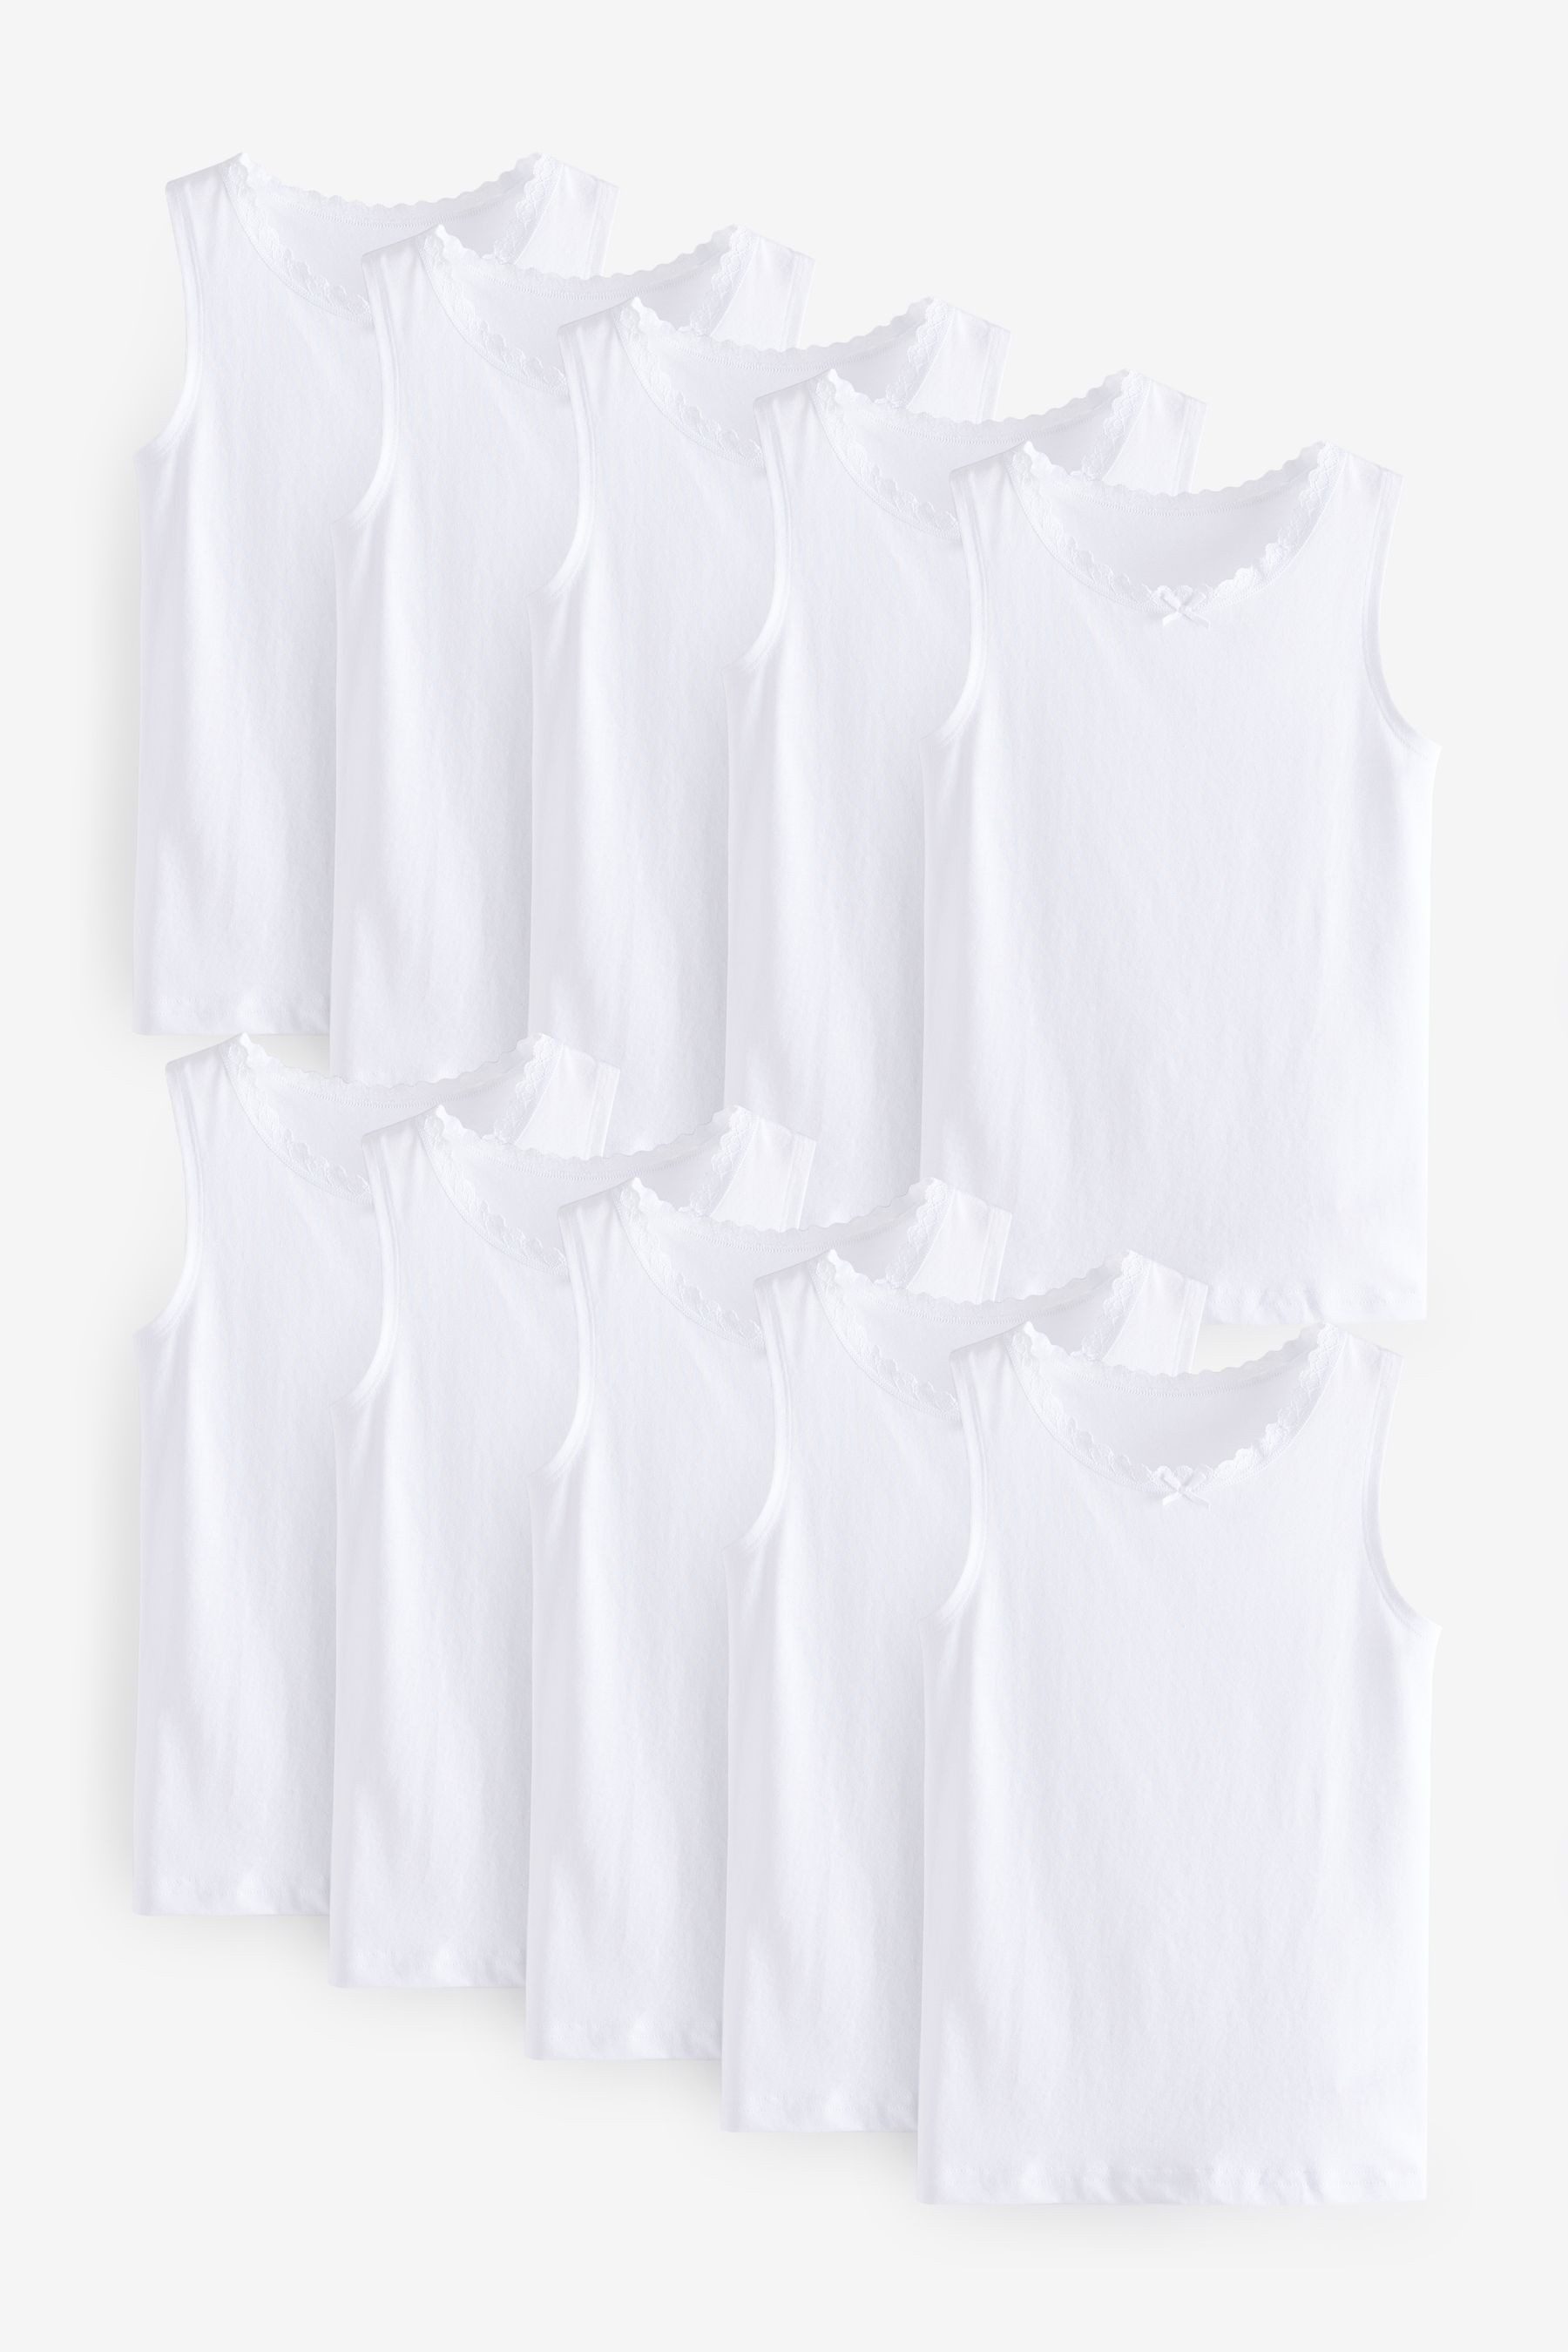 Next Unterhemd Trägertops mit Spitzenbesatz, 10er-Pack (10-St)